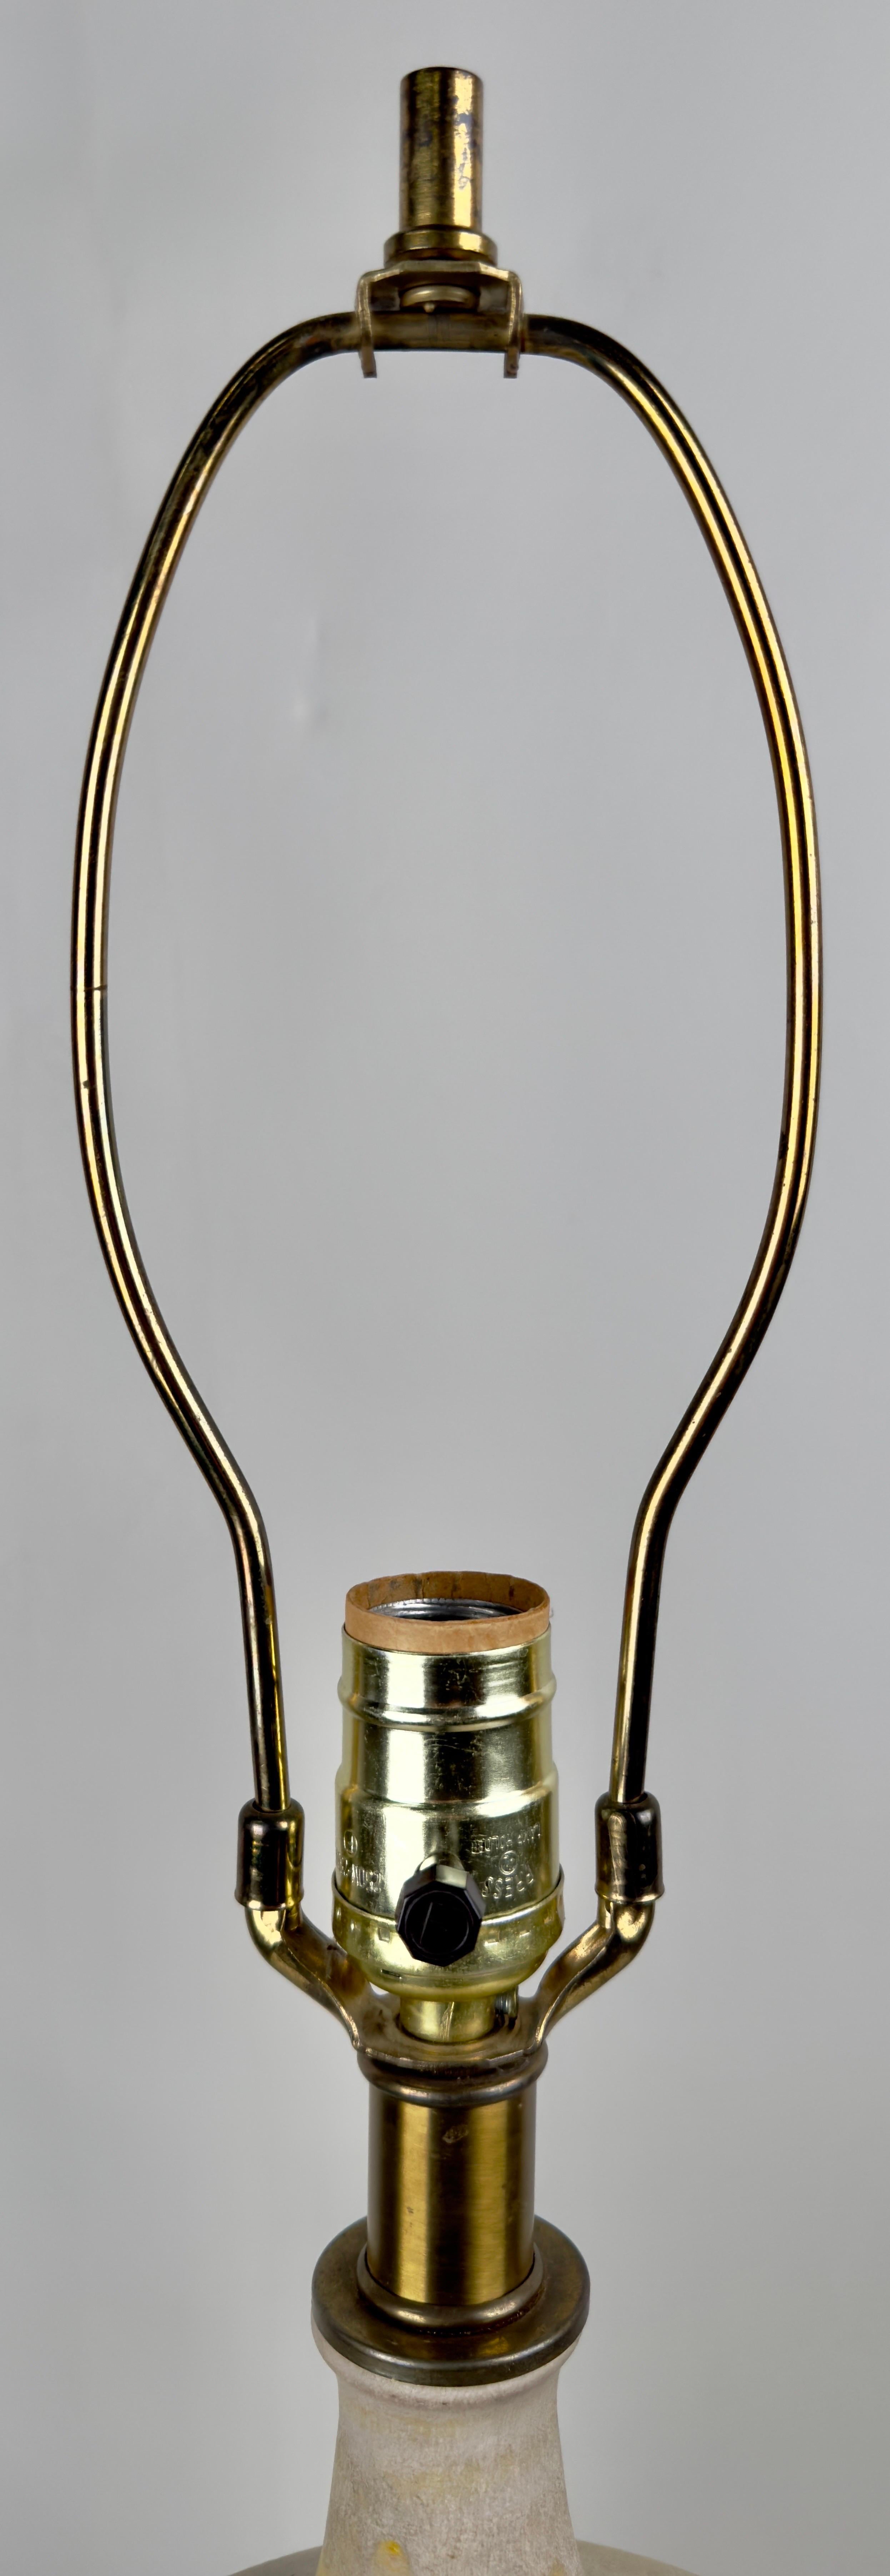 Lee Rosen Design Technics Mid Century Modern Ceramic Table Lamp, Signed  For Sale 2